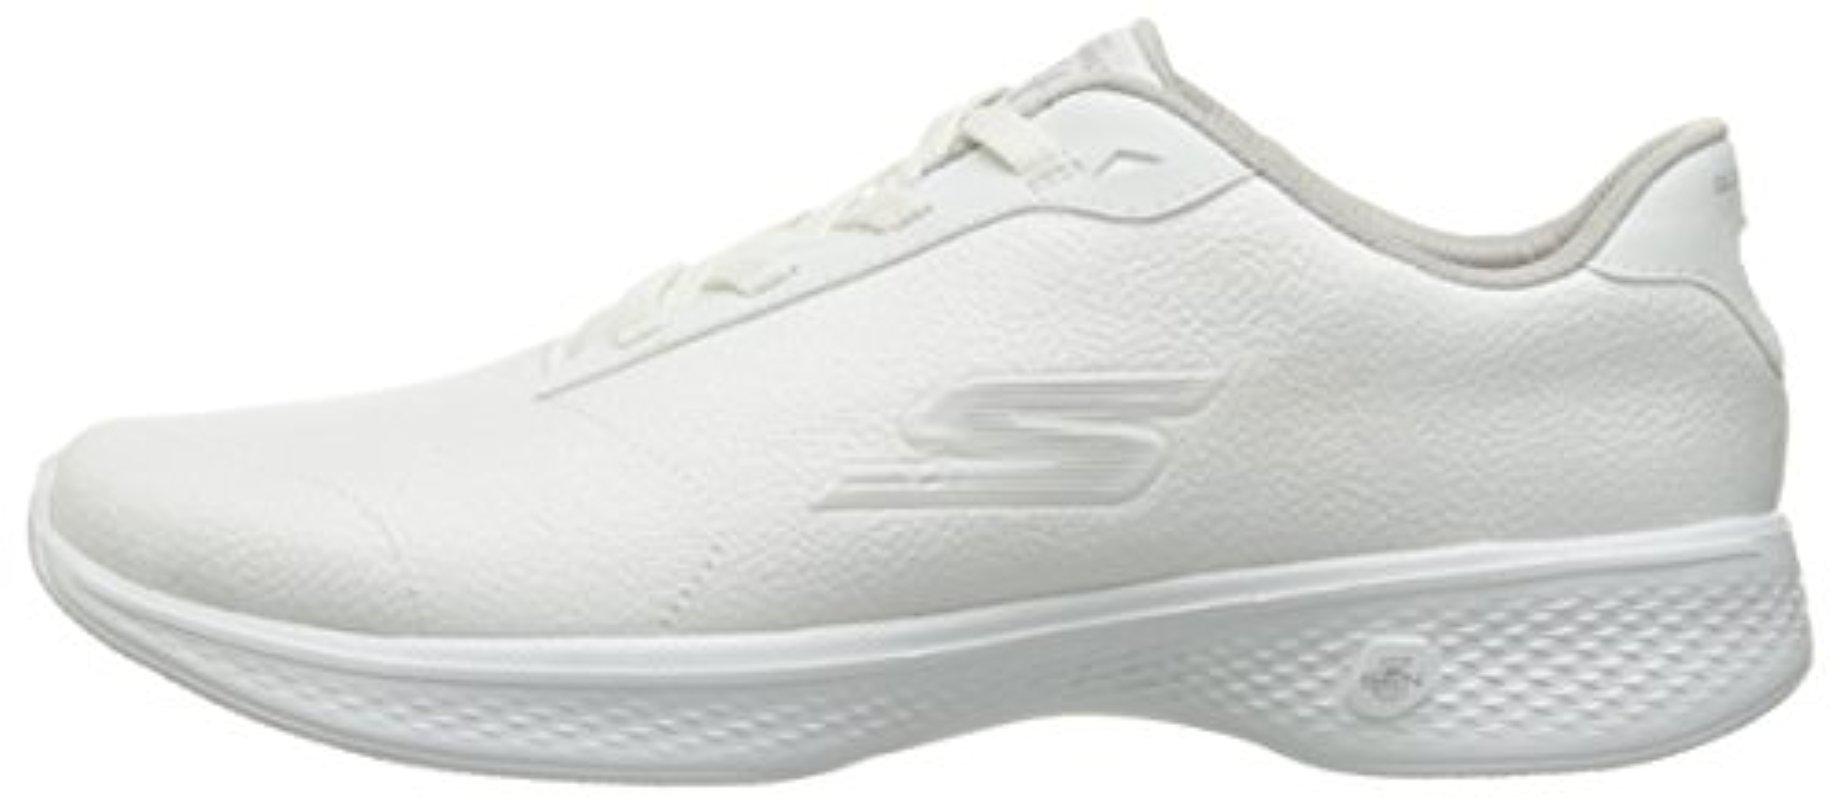 Skechers Leather Performance Go Walk 4 Premier Walking Shoe in White | Lyst